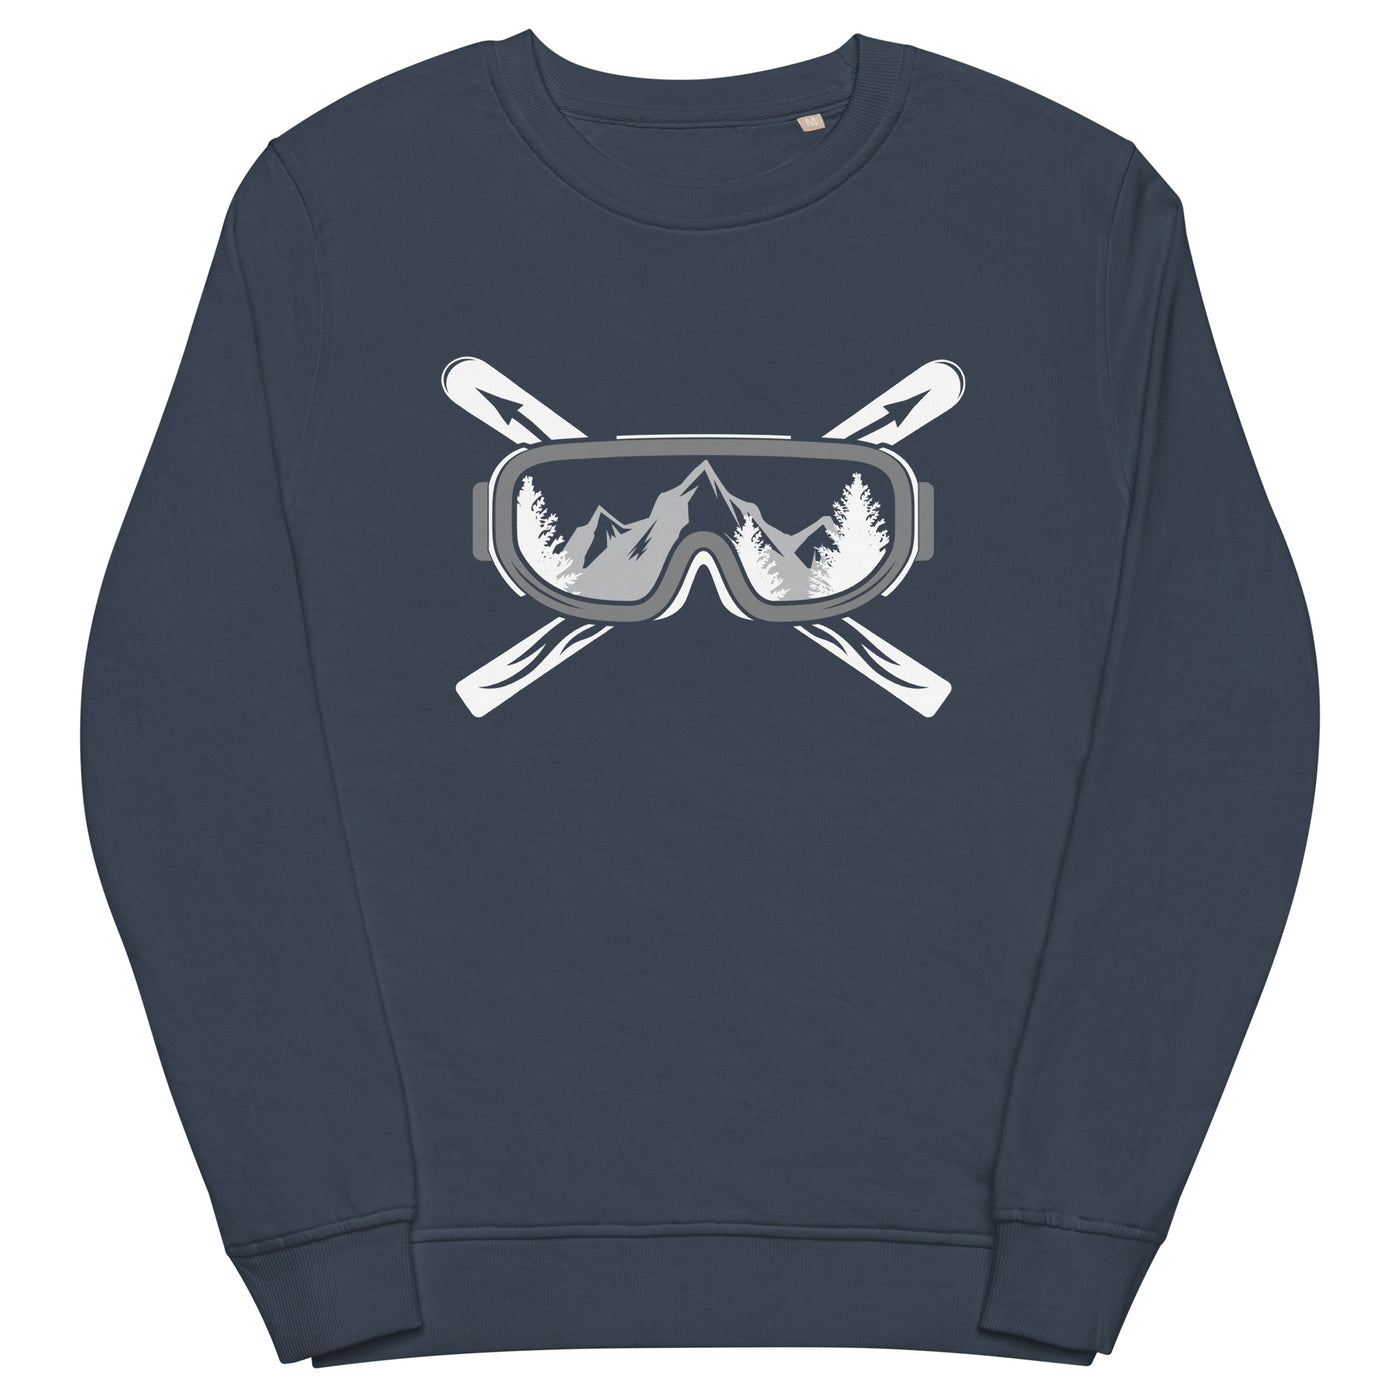 Berge Skier - Unisex Premium Organic Sweatshirt klettern ski xxx yyy zzz French Navy